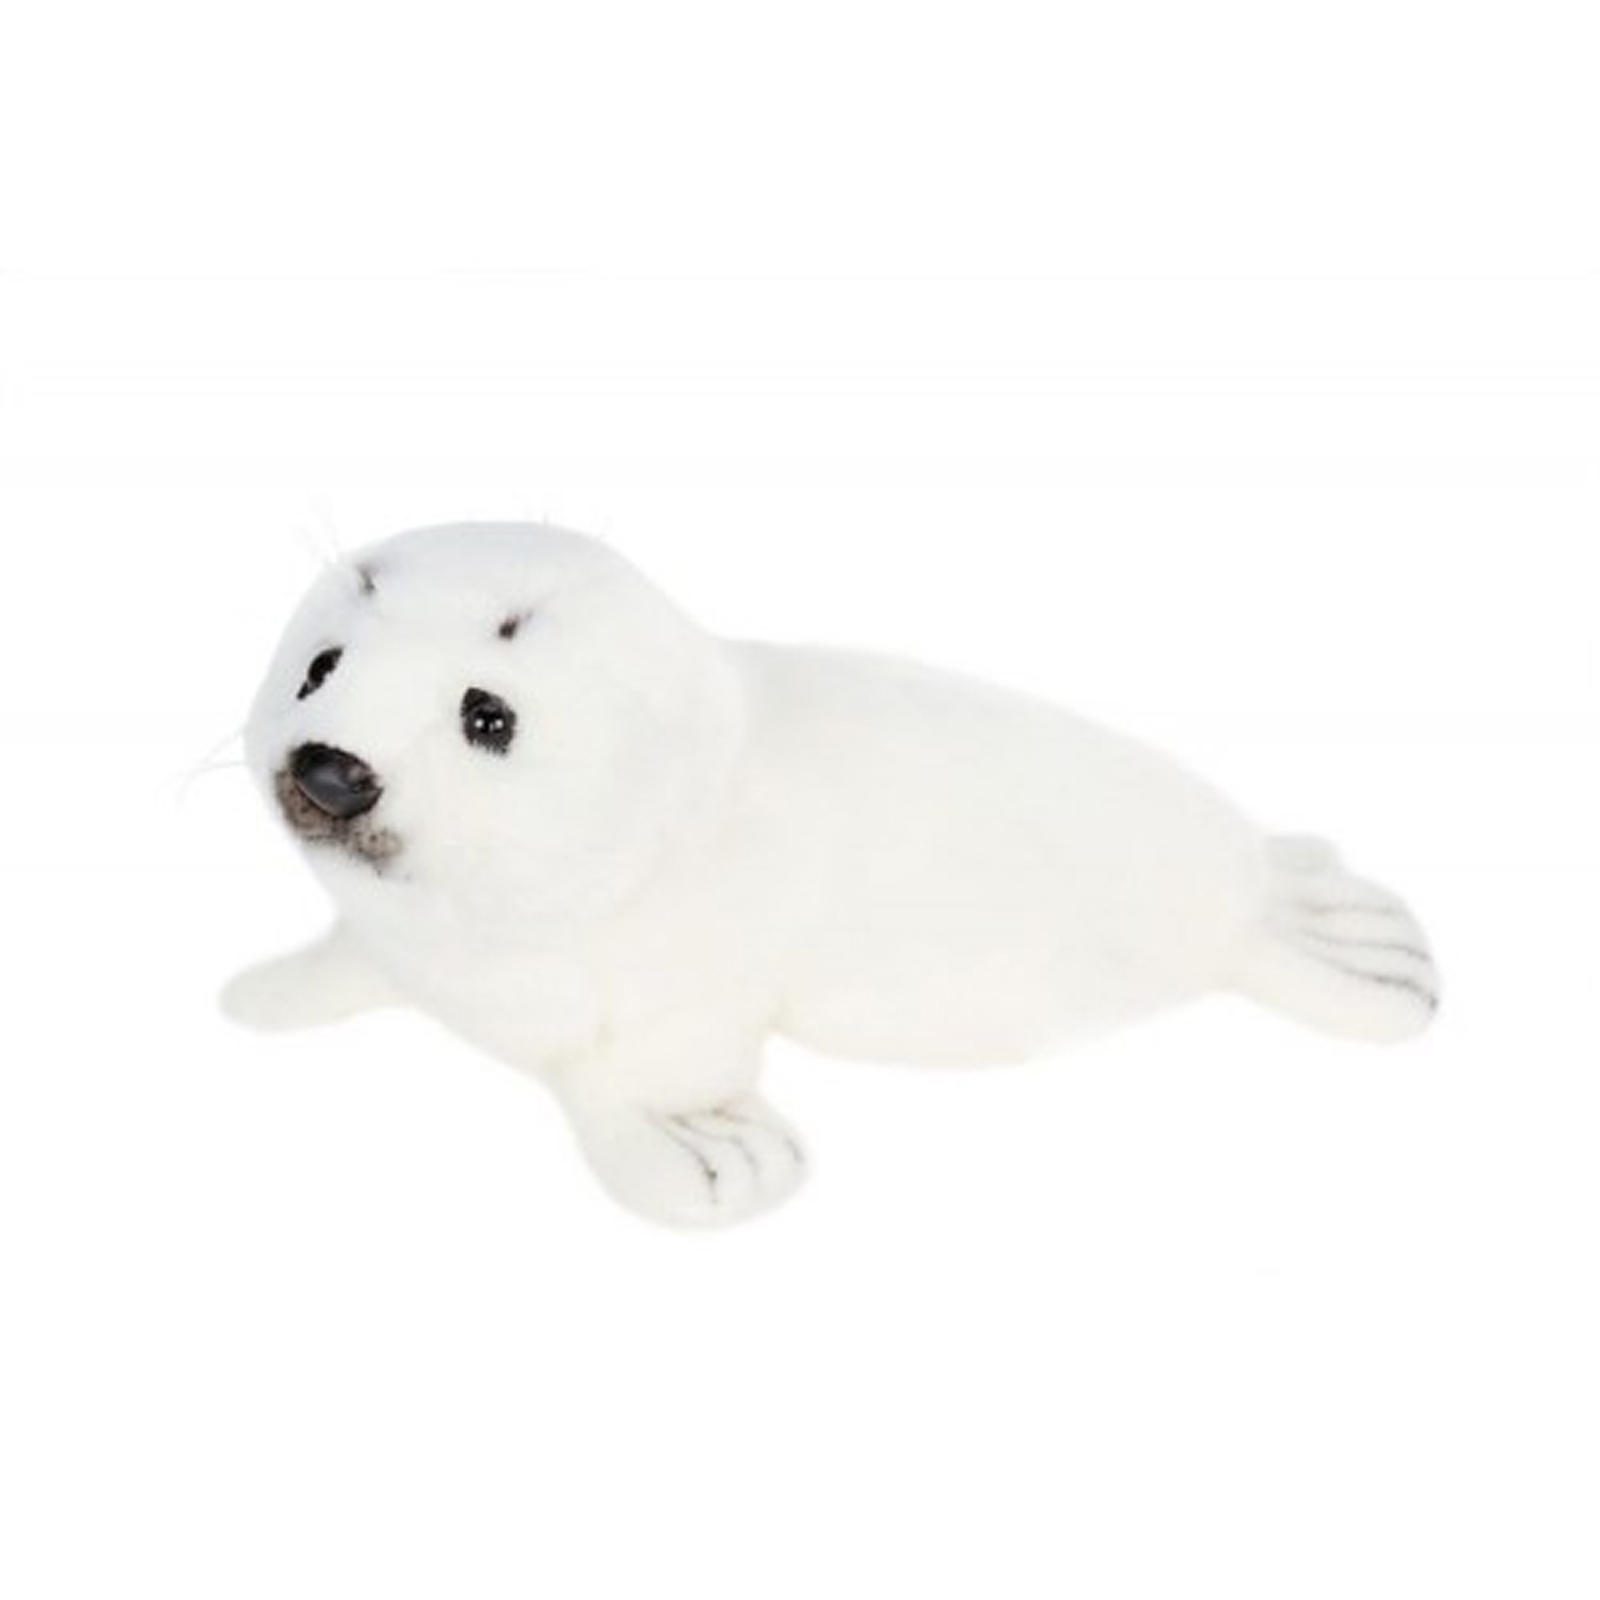 hansa Lying White Seal Plush